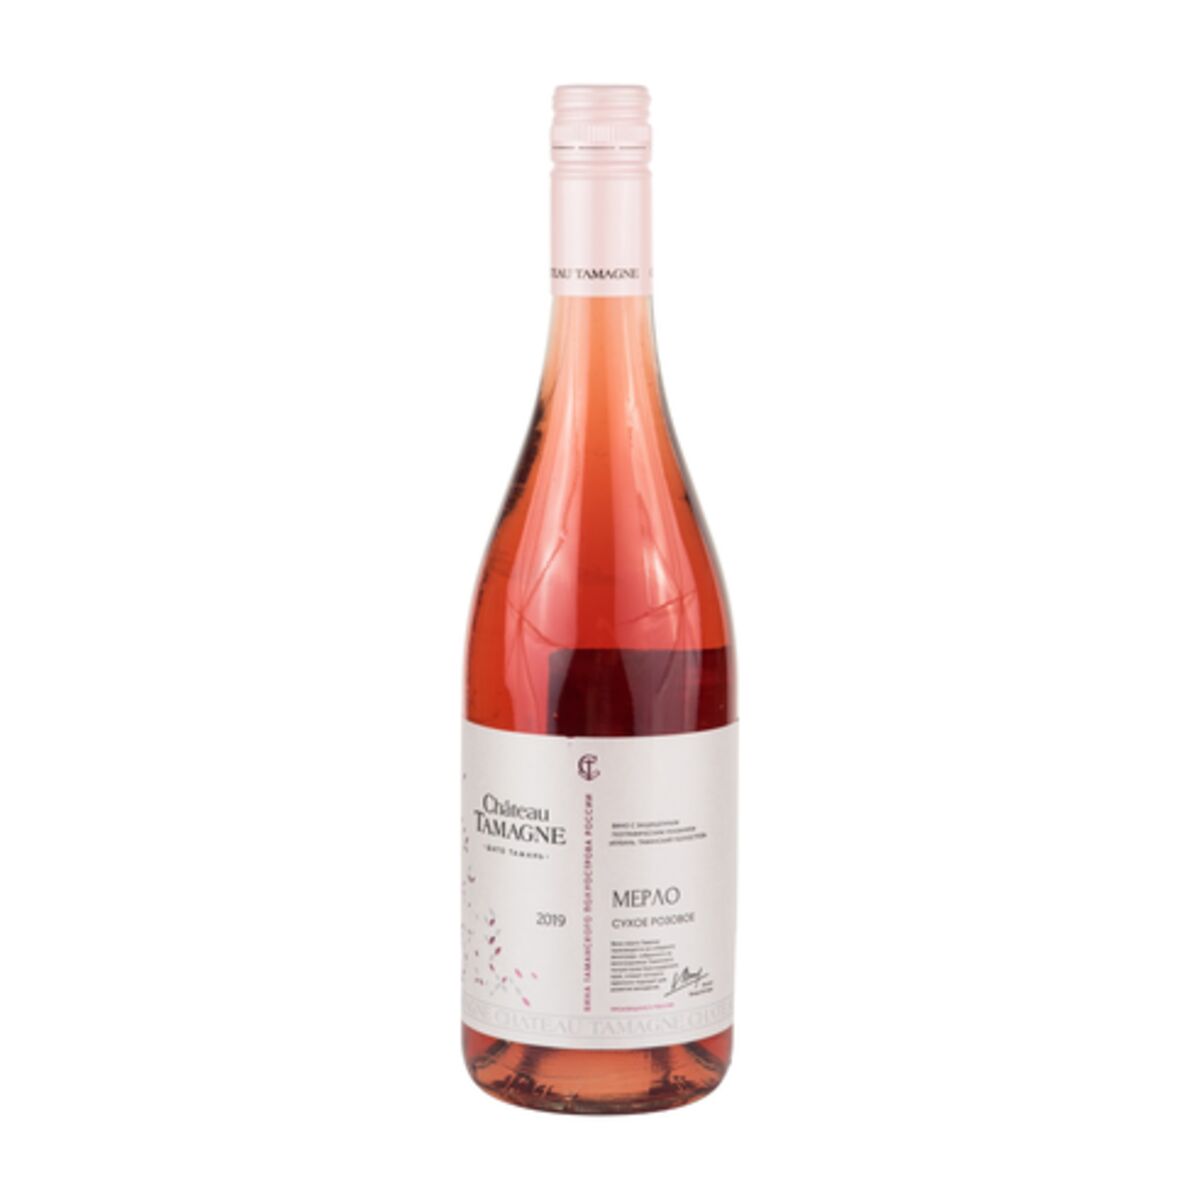 Кб тамань. Вино Шато Тамань розовое сухое. Chateau Tamagne Мерло розовое сухое. Вино Шато Тамань розовое сухое 0 75. Шато Тамань вино розовое.